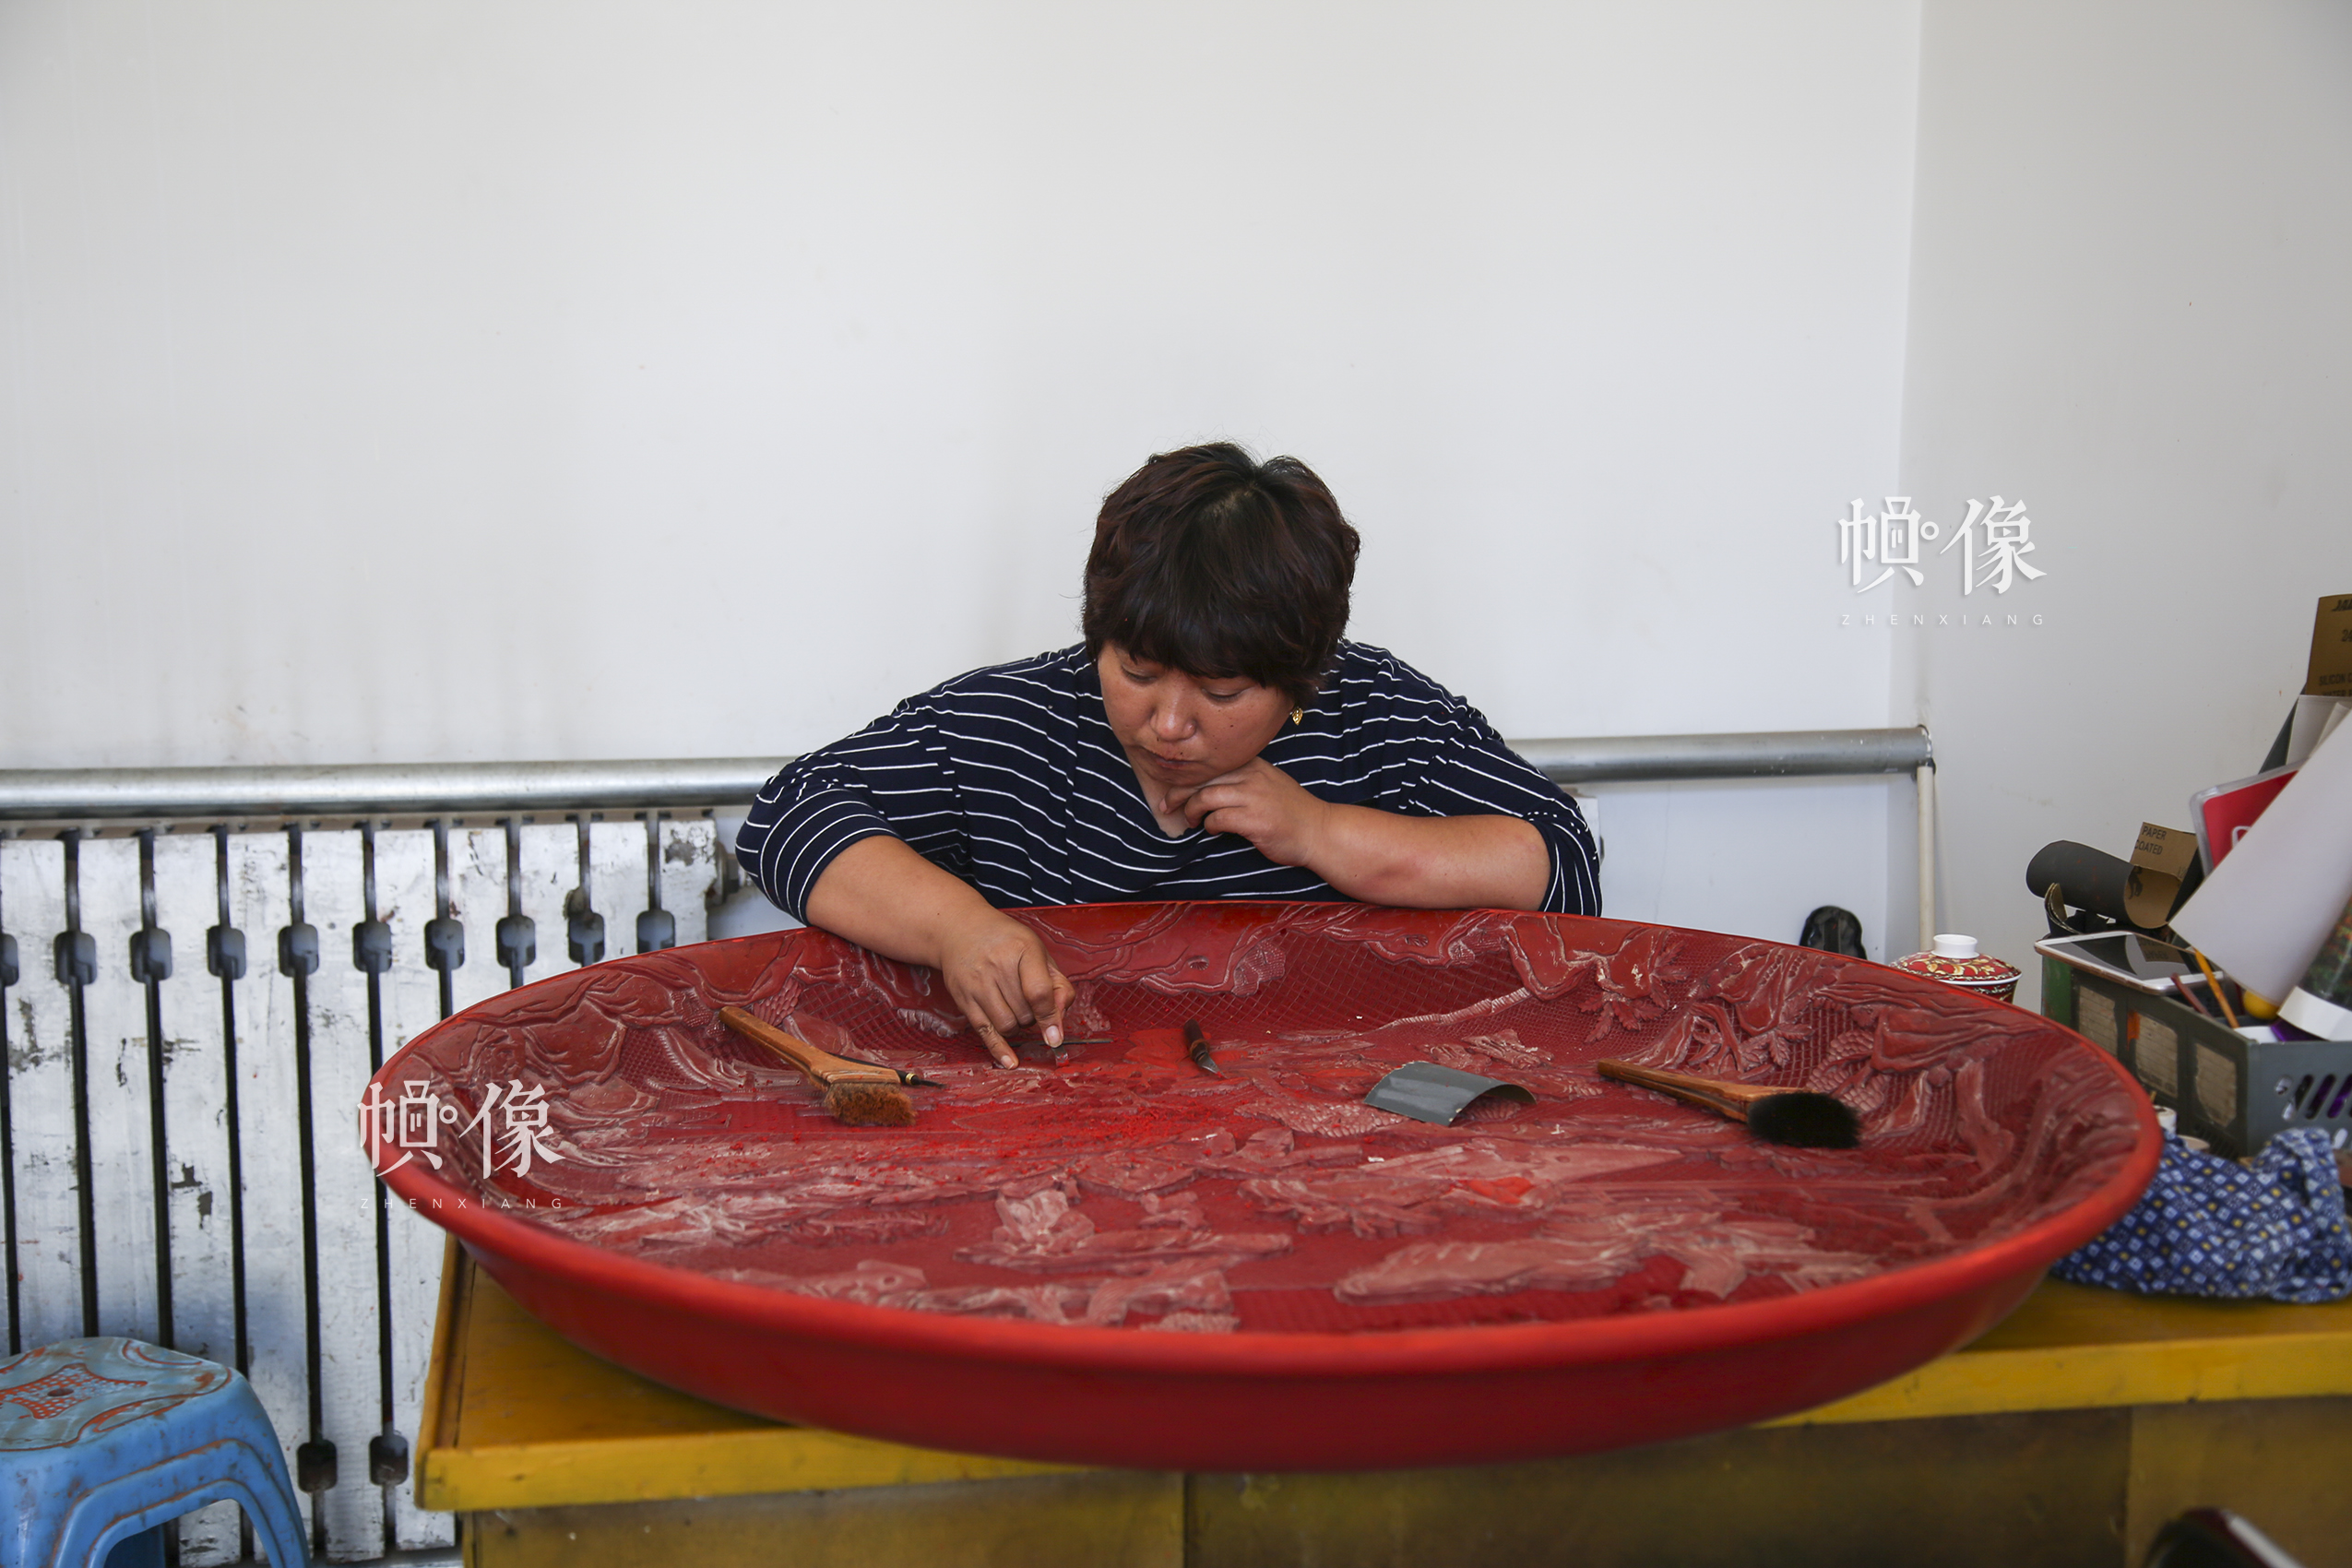 2017年9月20日，“明古斋”雕漆工厂车间，工作人员制作雕漆作品。中国网记者 黄富友 摄 